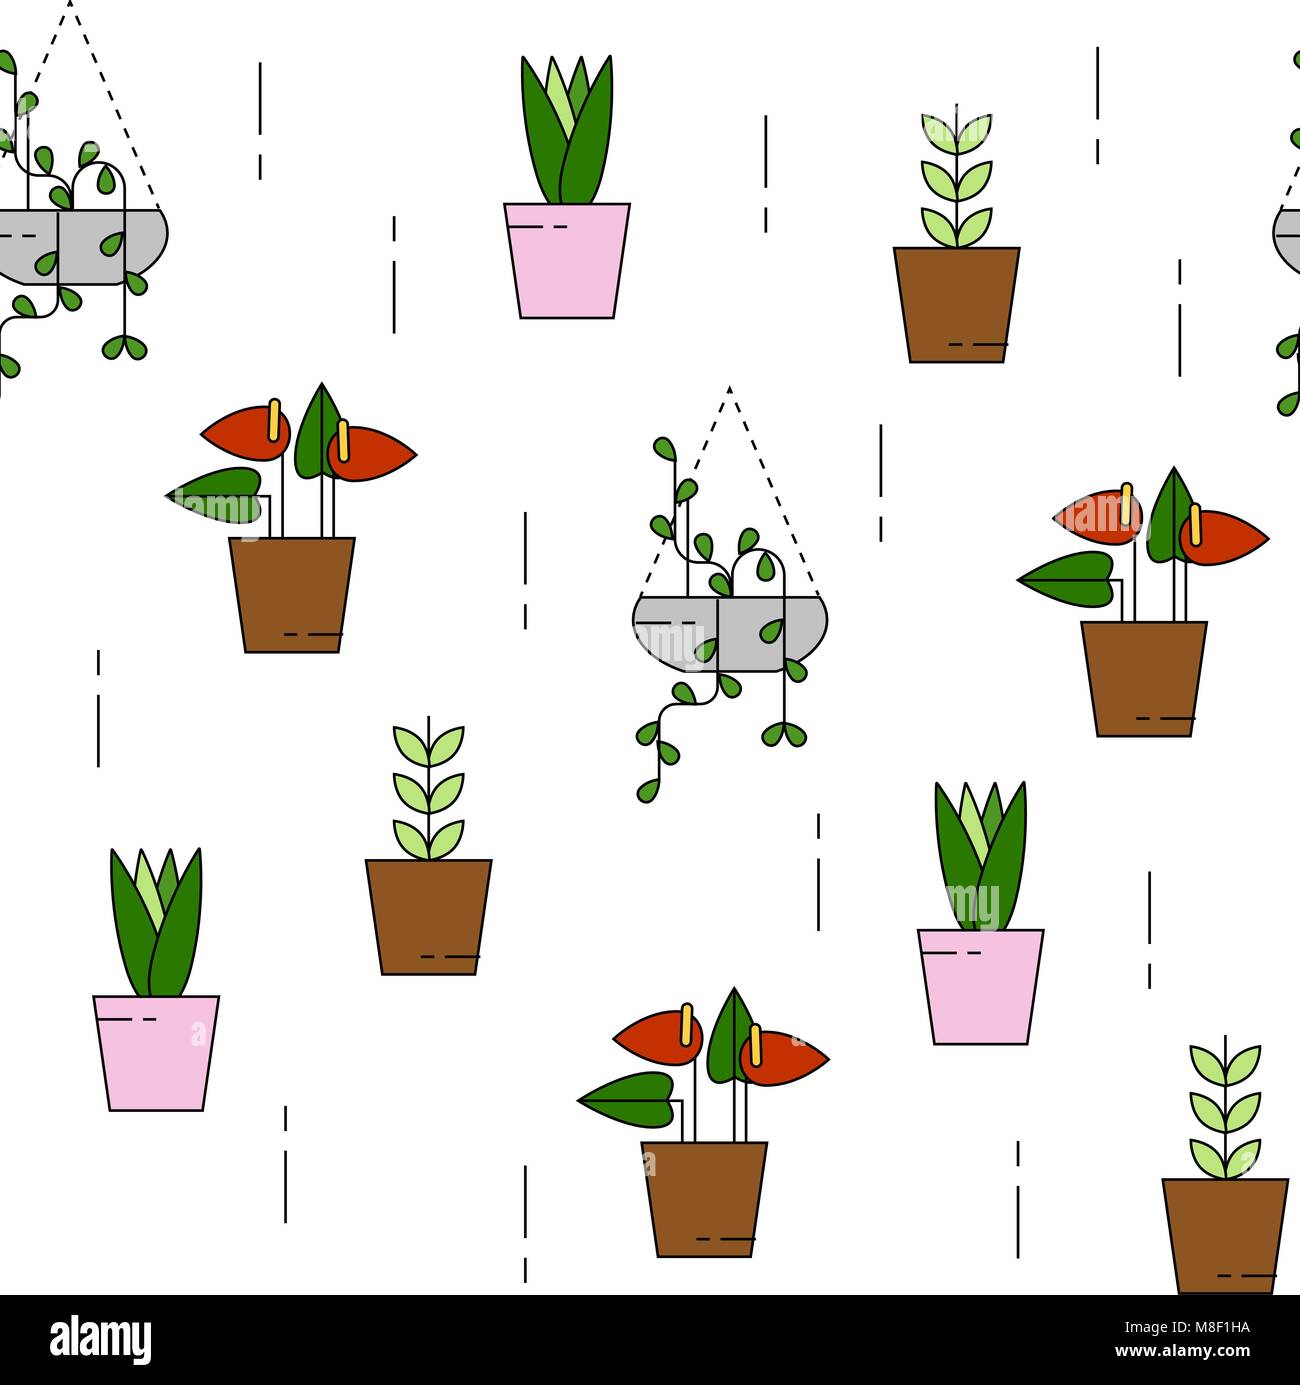 Les plantes d'un modèle avec la plante grimpante et Lilly. Peut être utilisé pour le fond, site Web, affiches etc. Illustration de Vecteur